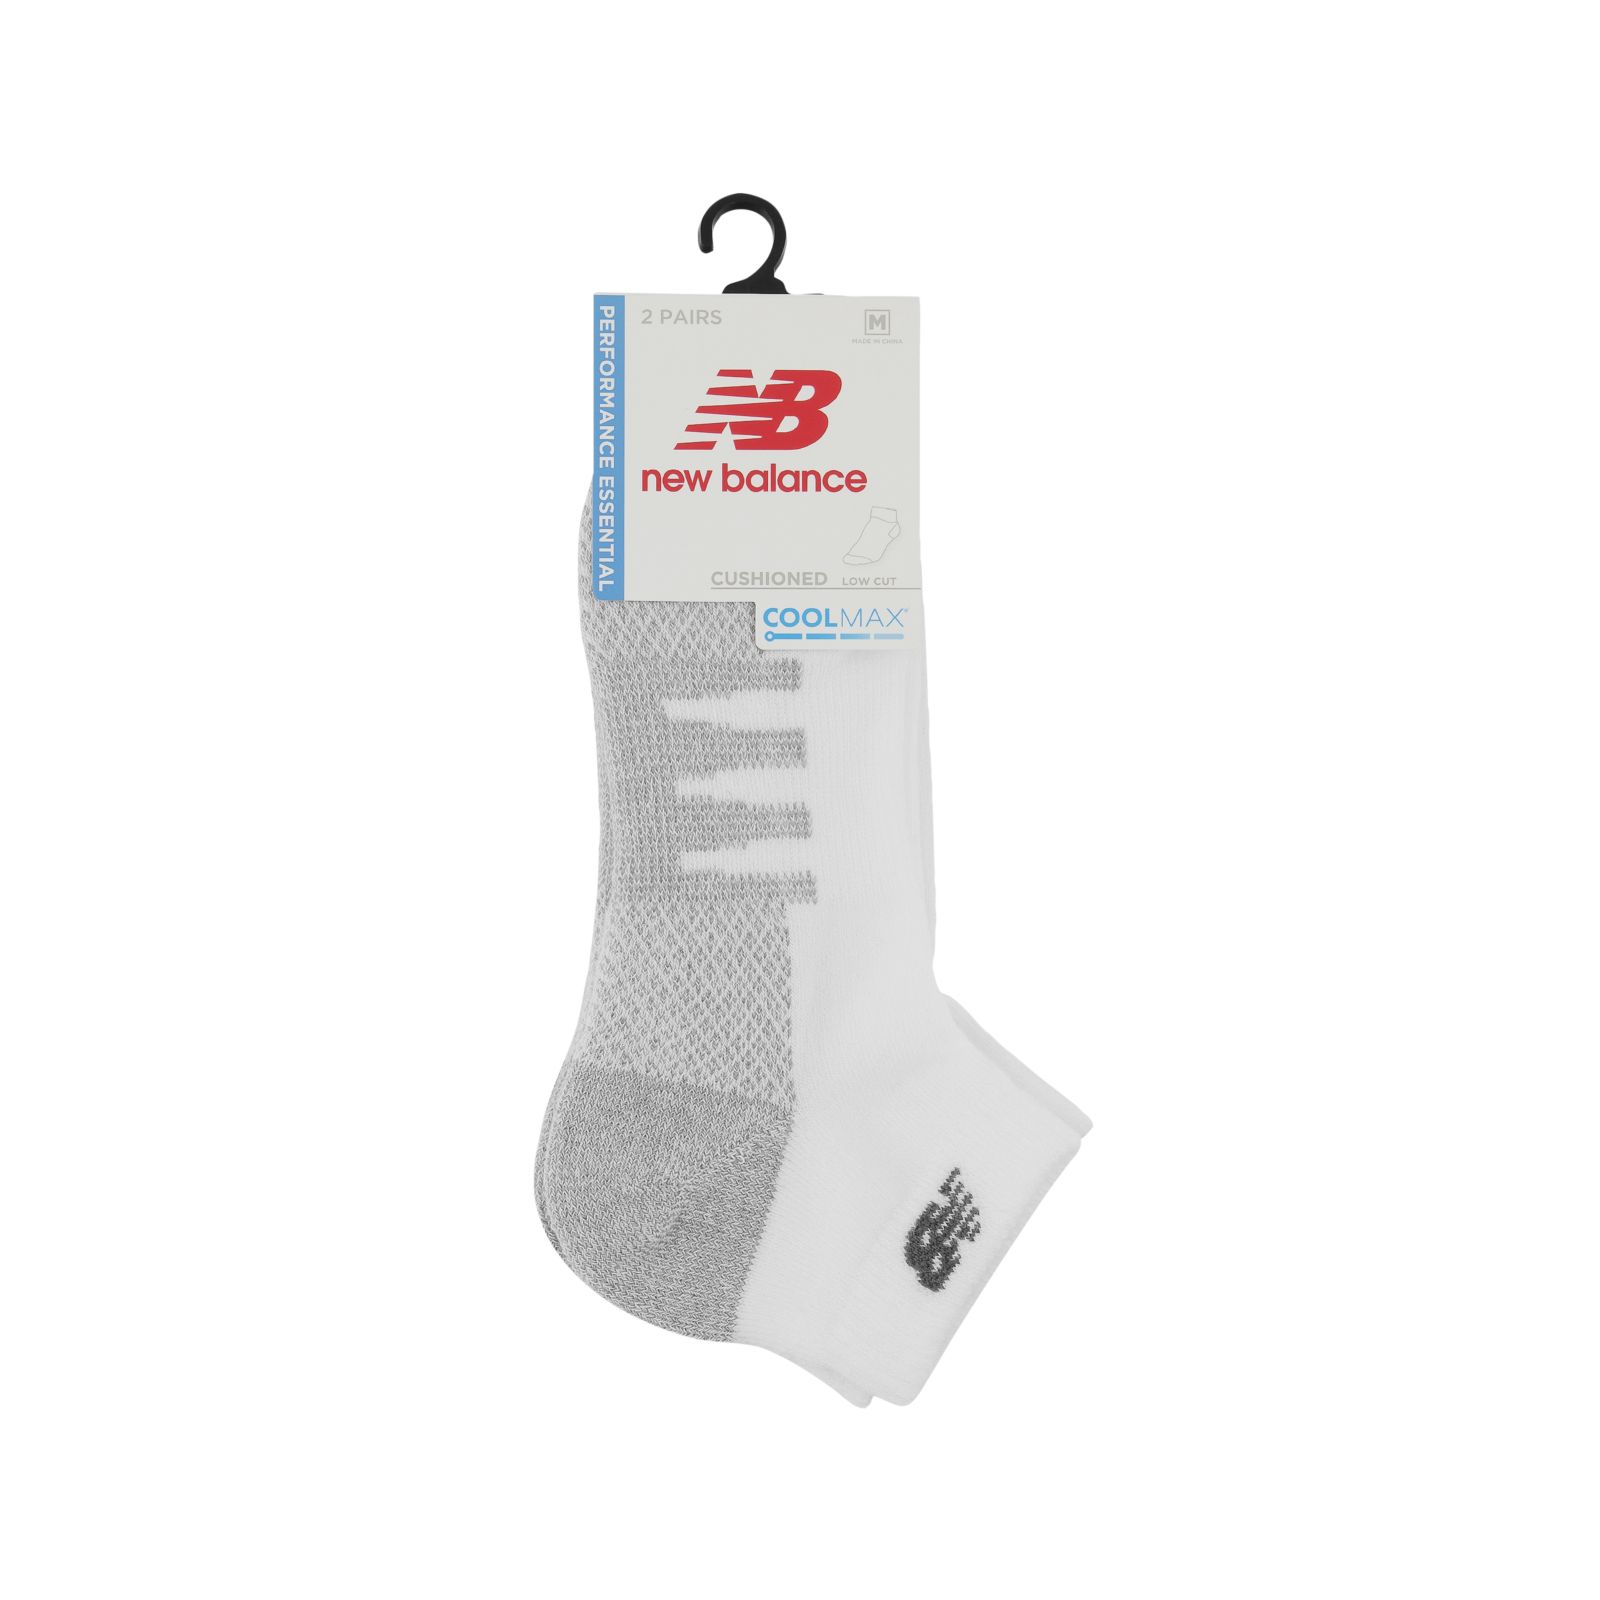 Cushioned Low Cut Socks 6 Pack - New Balance